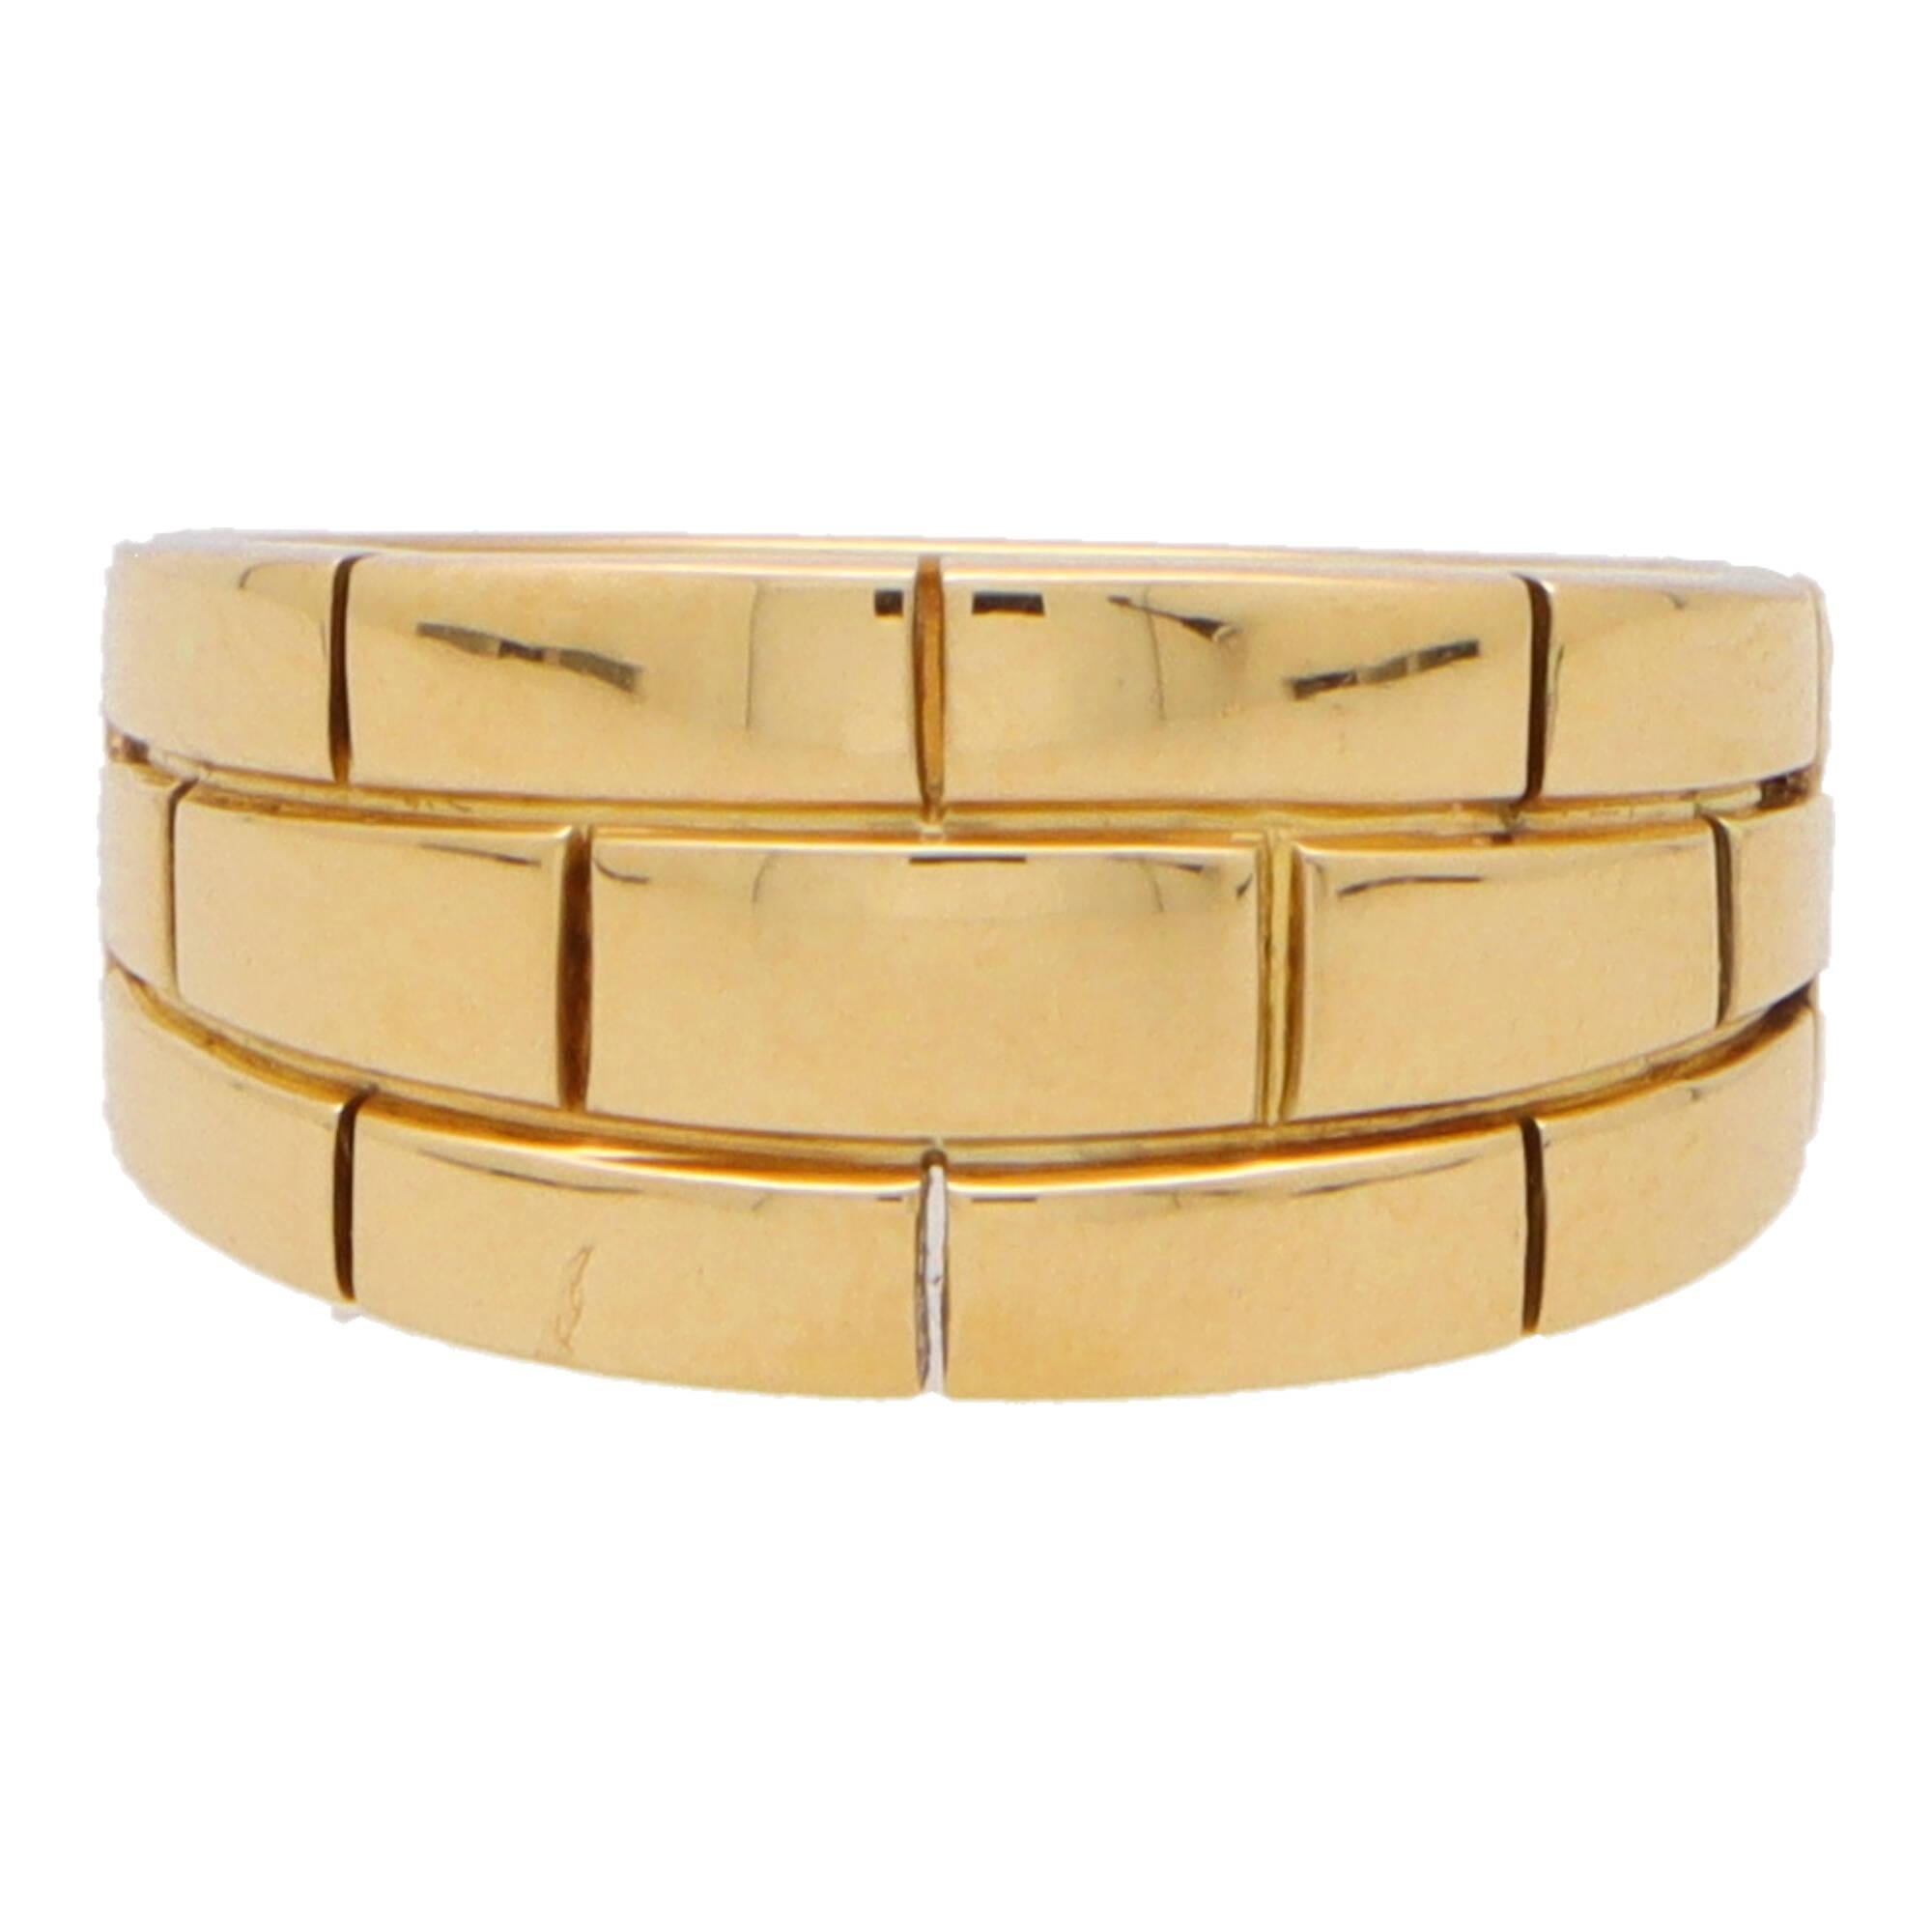 Eine schöne Vintage Cartier Maillon Panthère Ziegel Link Motiv Ring in 18k Gelbgold gesetzt.

Der Ring besteht aus 3 Reihen von Ziegelsteinen, die auf halber Strecke um das Band herum verlaufen. Die Breite des Bandes ist gut abgestuft, und der Ring